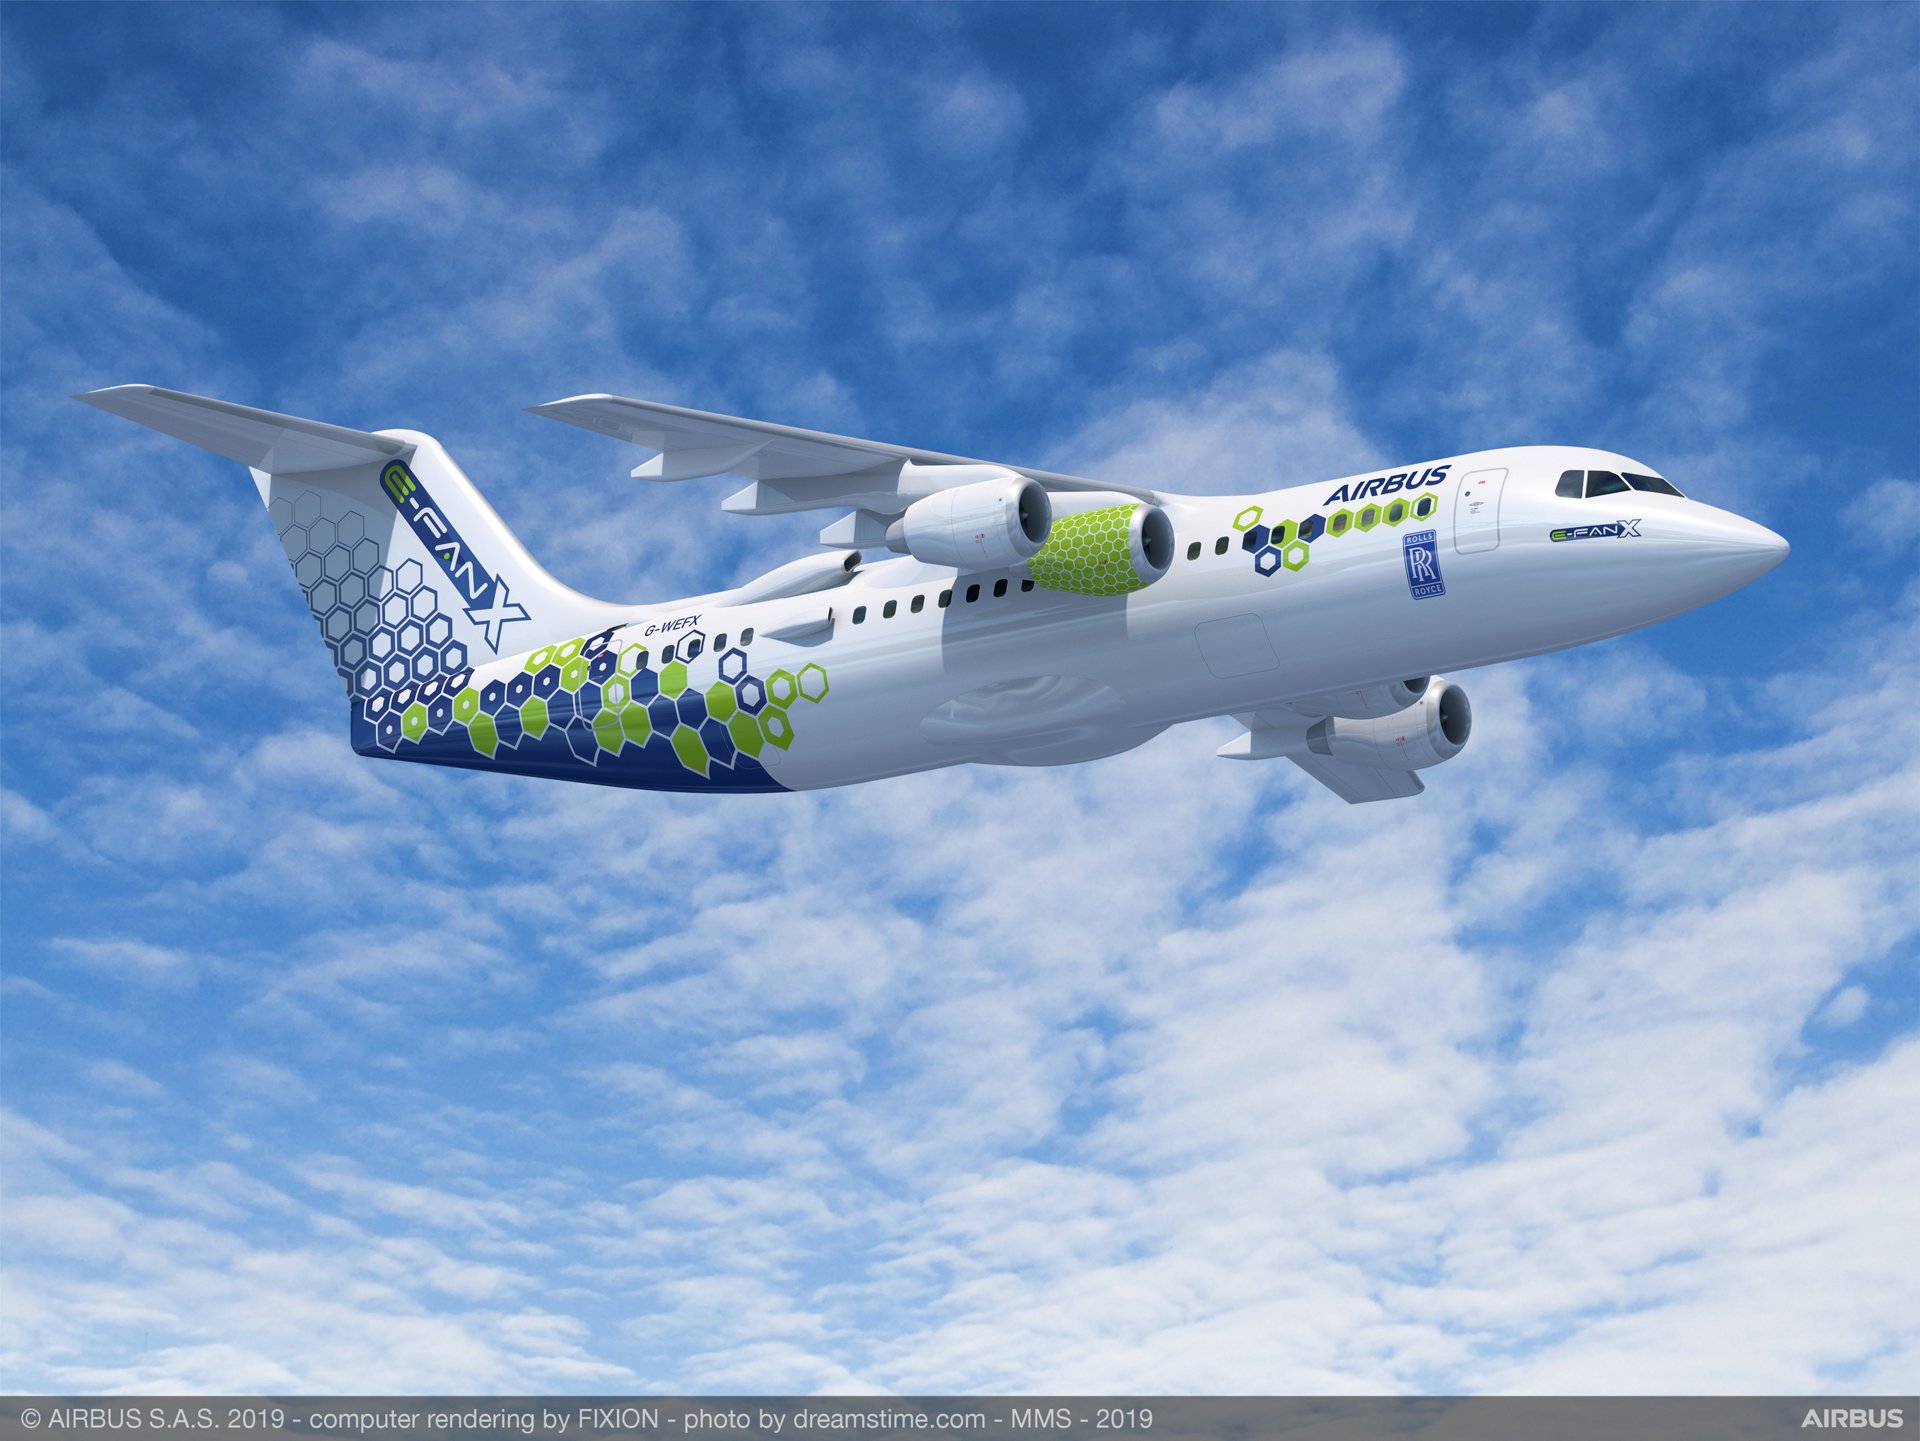 乐动体育app靠谱吗空中客车的E-FAN X，较小的全电气式扇动飞机的越强大的继任者，计划在2021年首次飞行作为演示测试2 MW混合电动推进系统